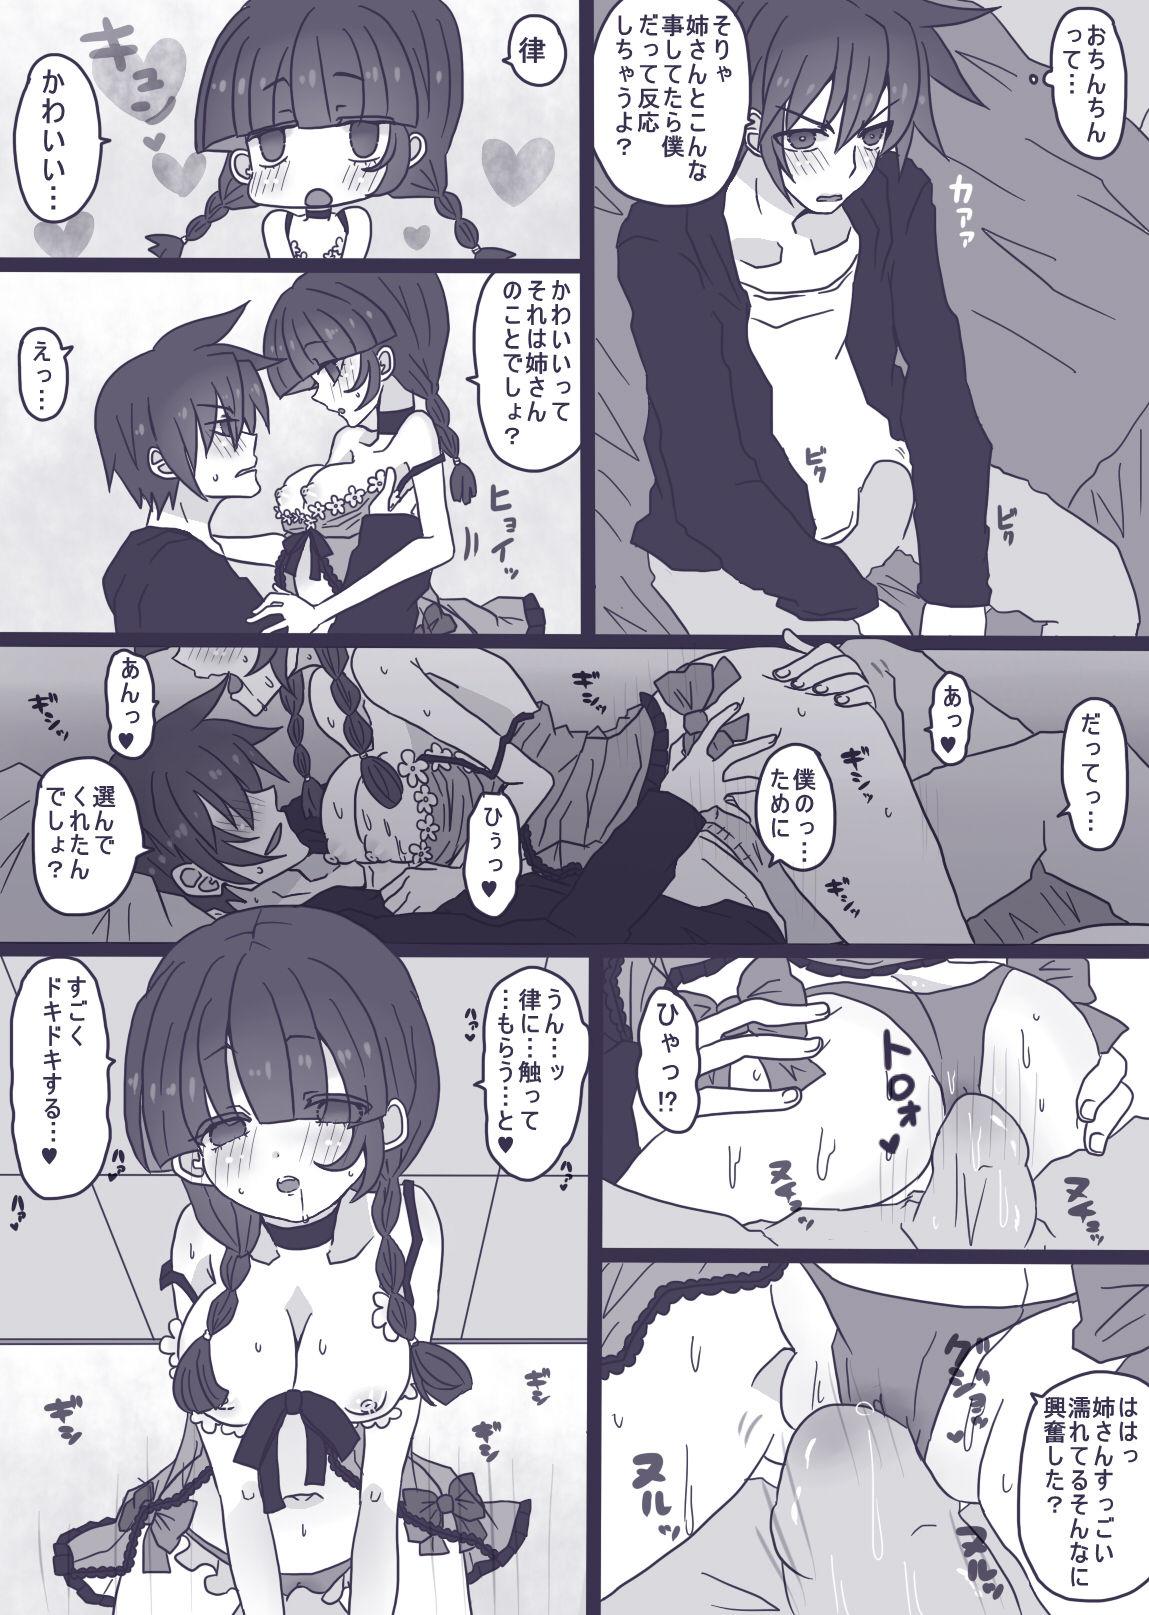 Girlongirl 霊モブ・律モブ漫画 - Mob psycho 100 Ftvgirls - Page 6